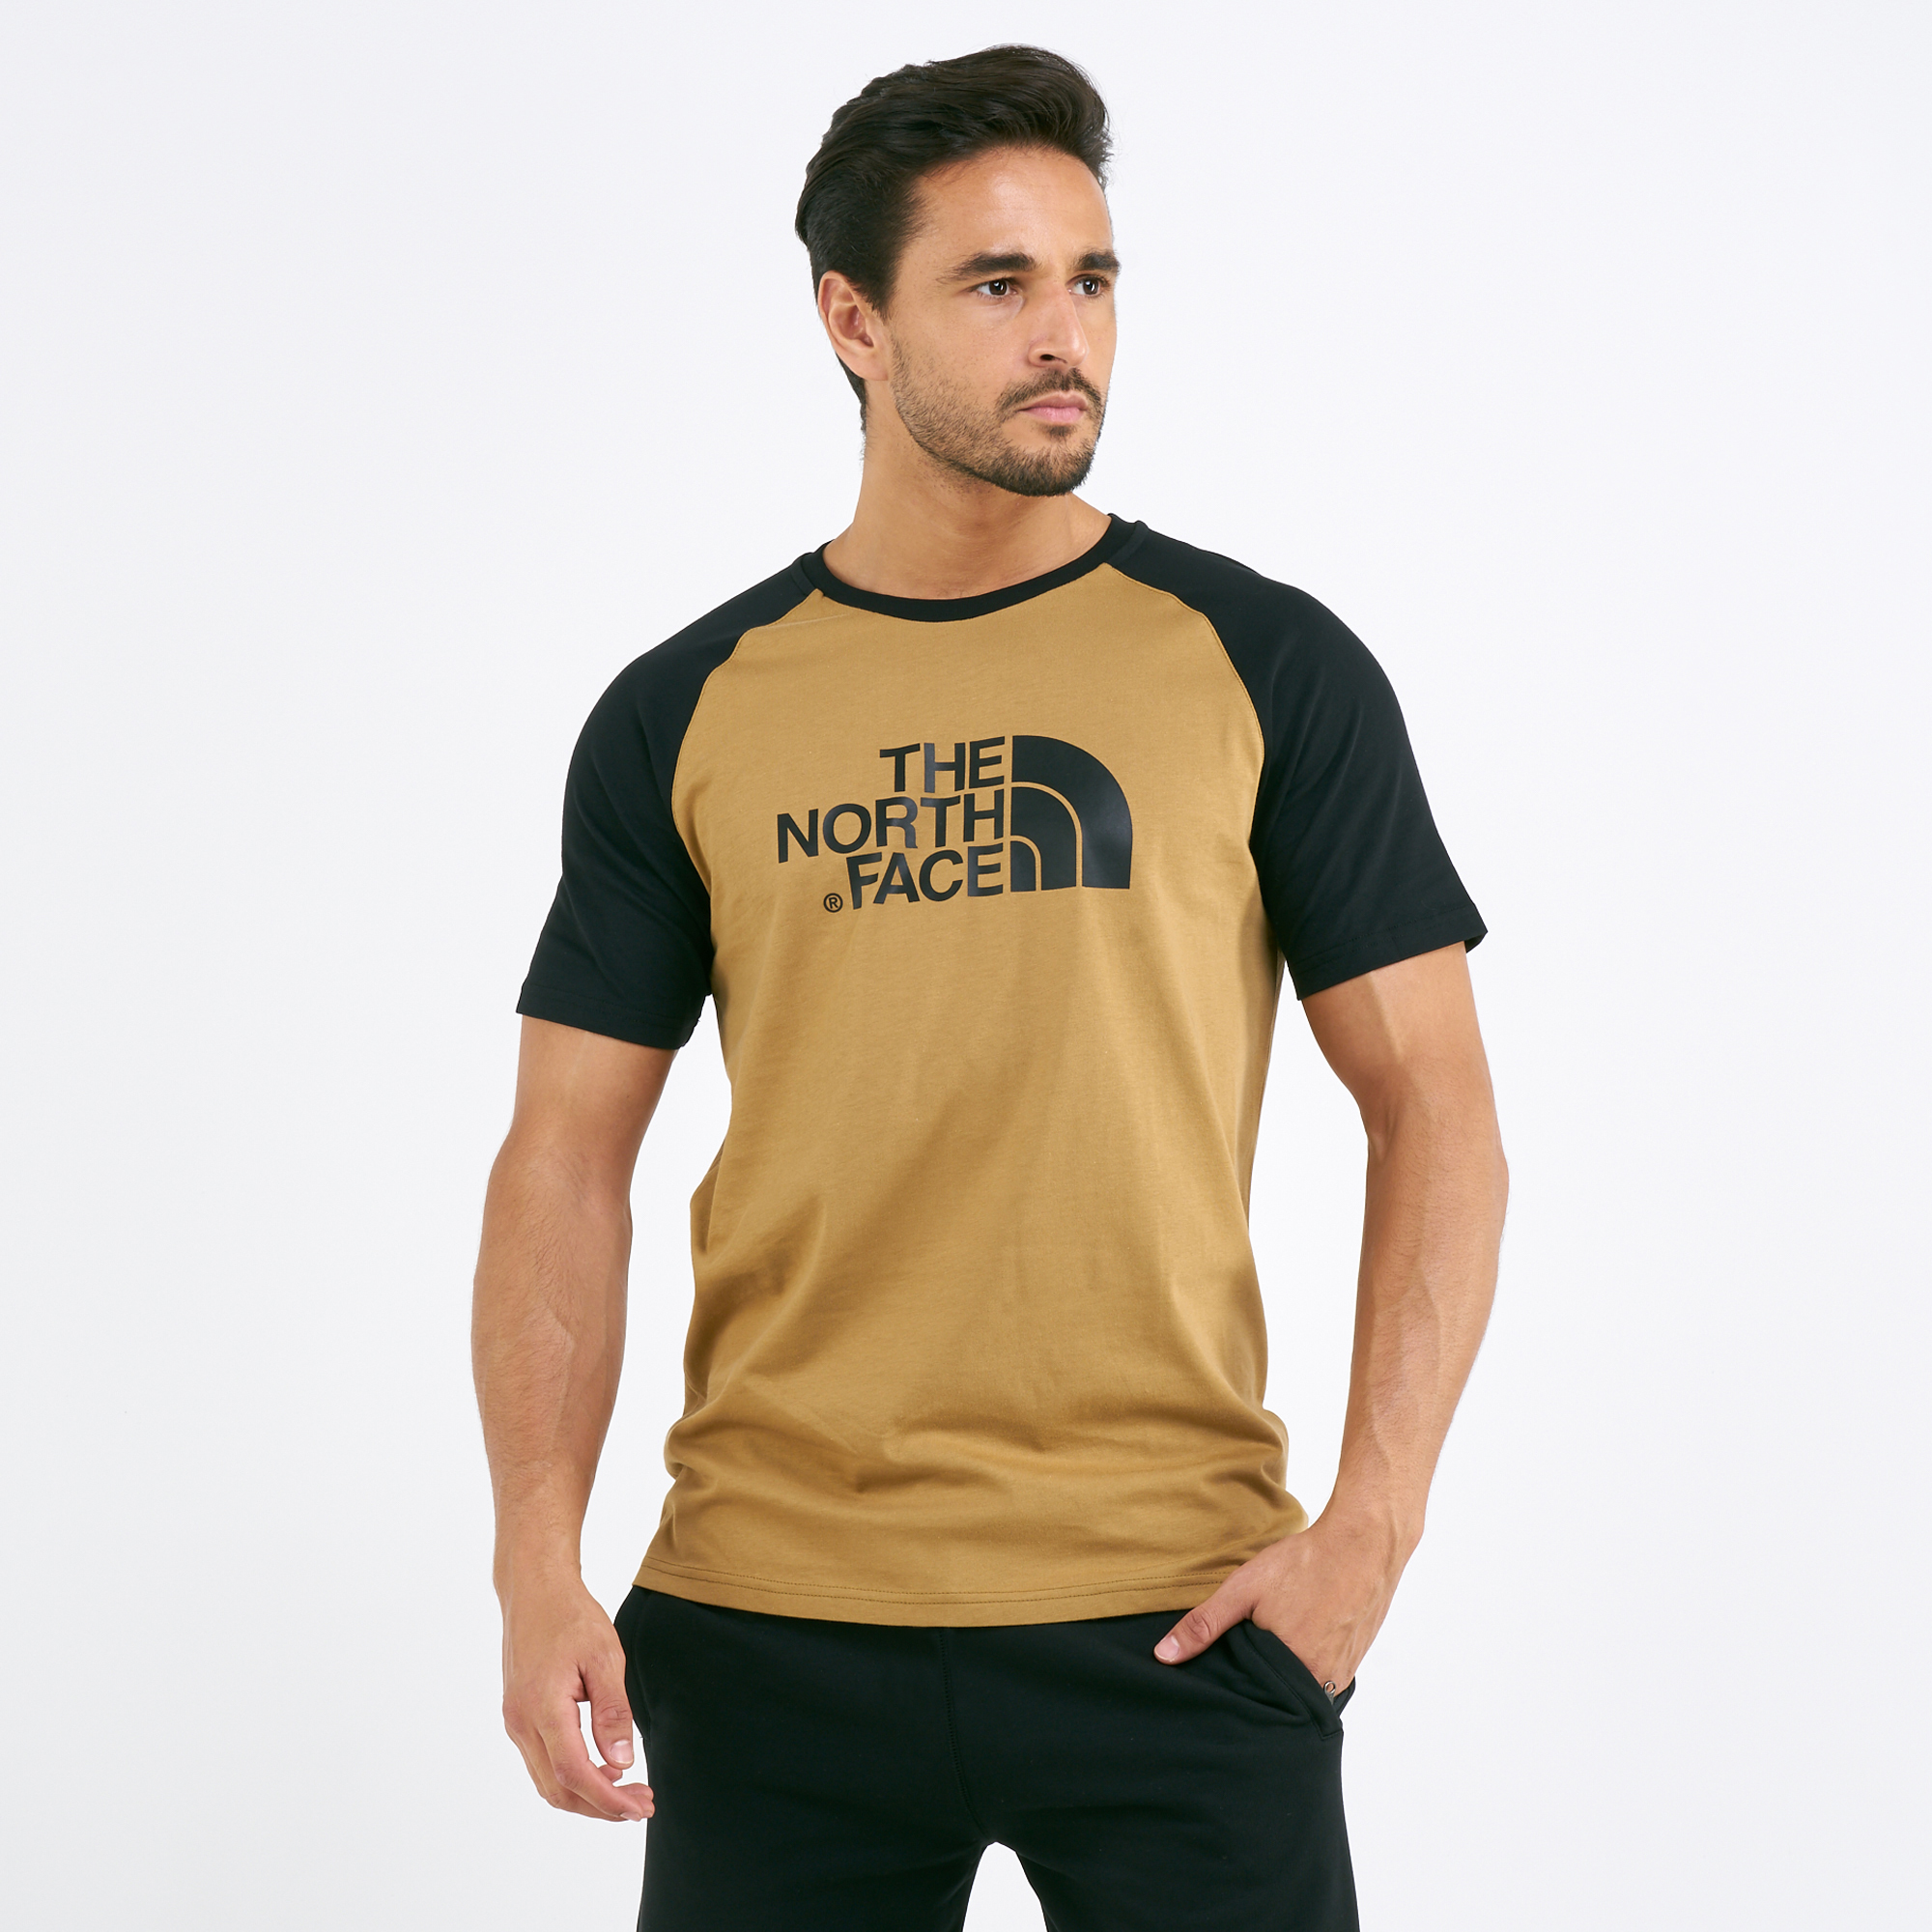 Buy The North Face Men's Raglan Easy T-Shirt Online in Dubai, UAE | SSS